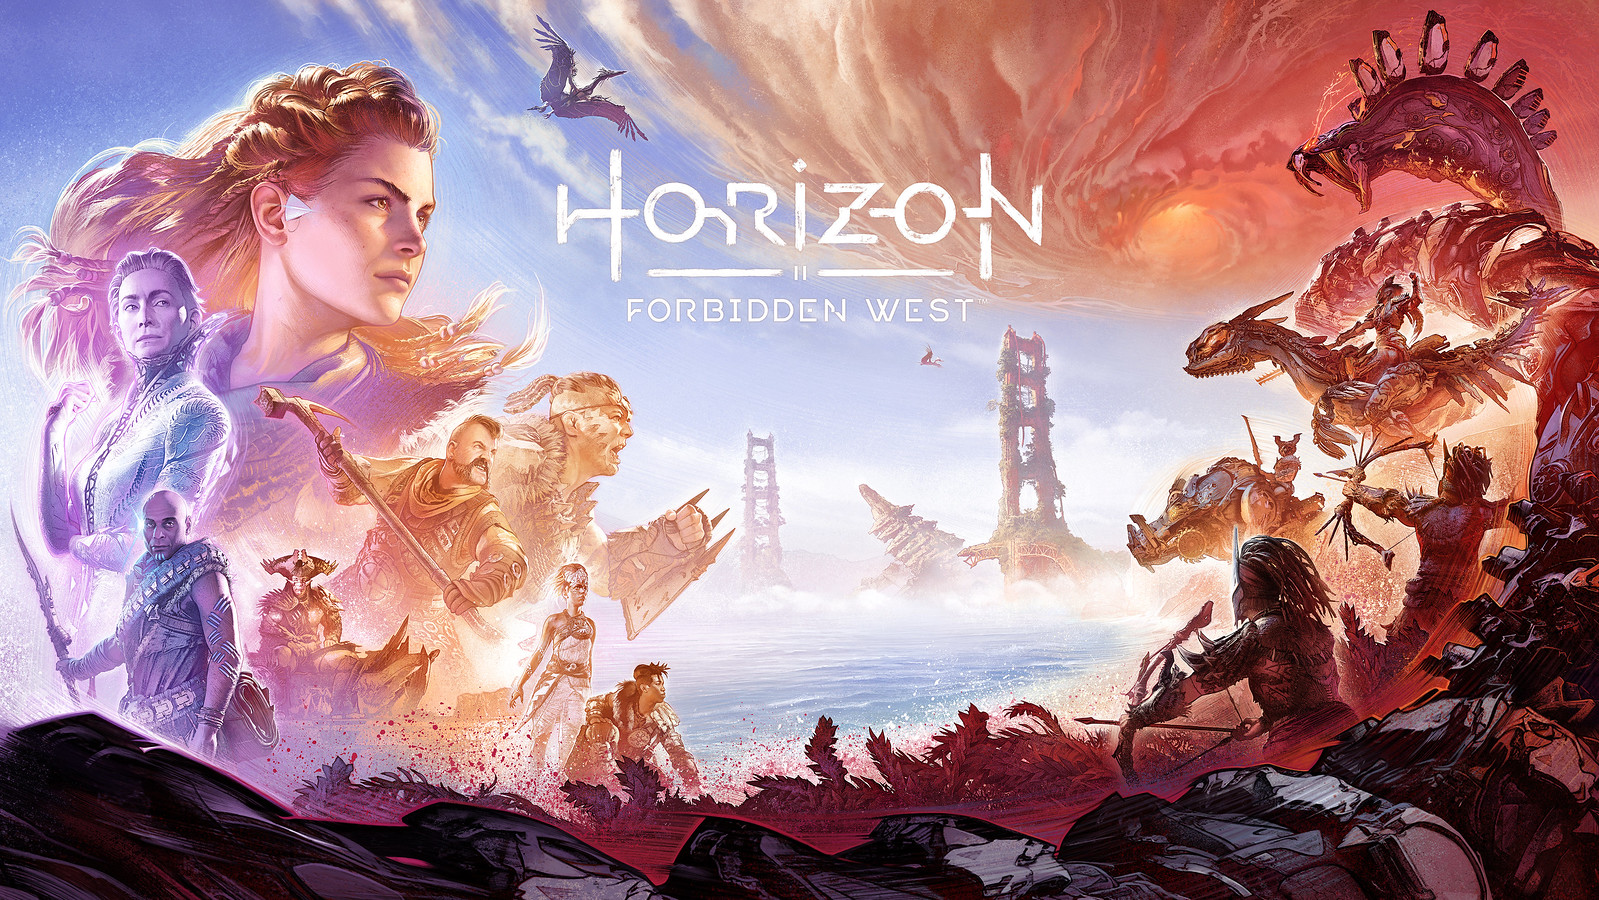 Horizon Forbidden West trailer